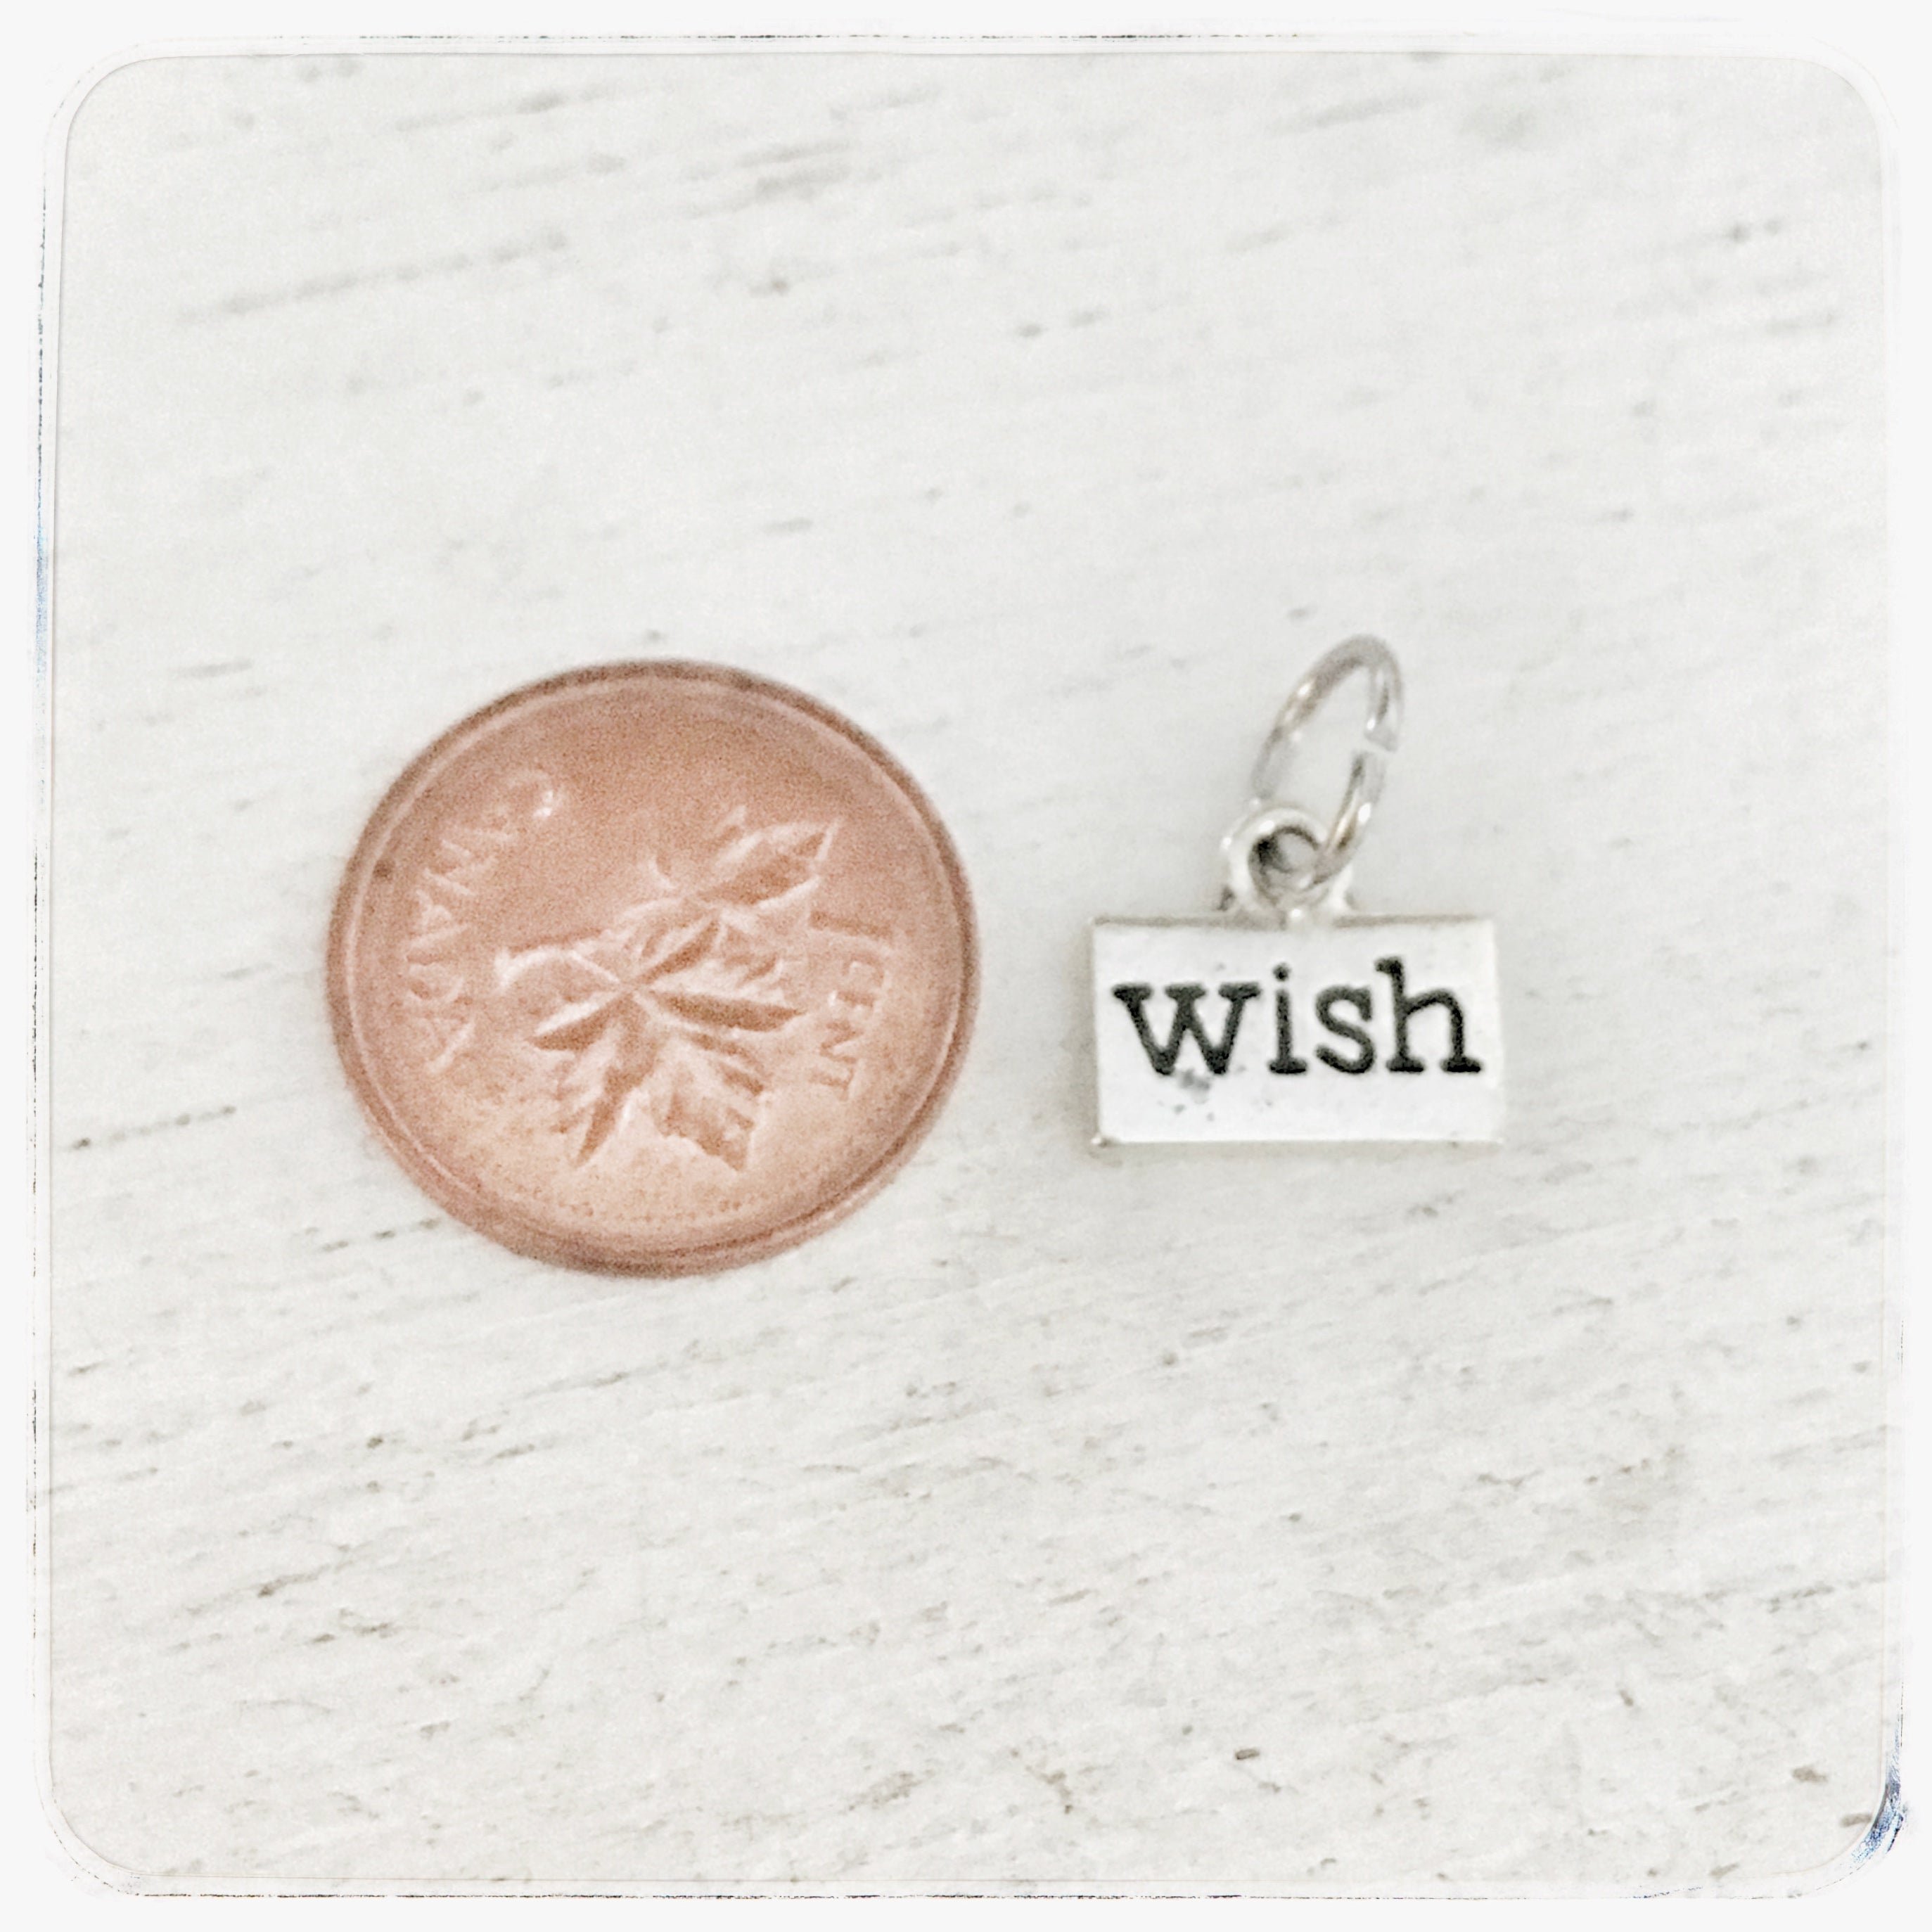 Wish - Charm